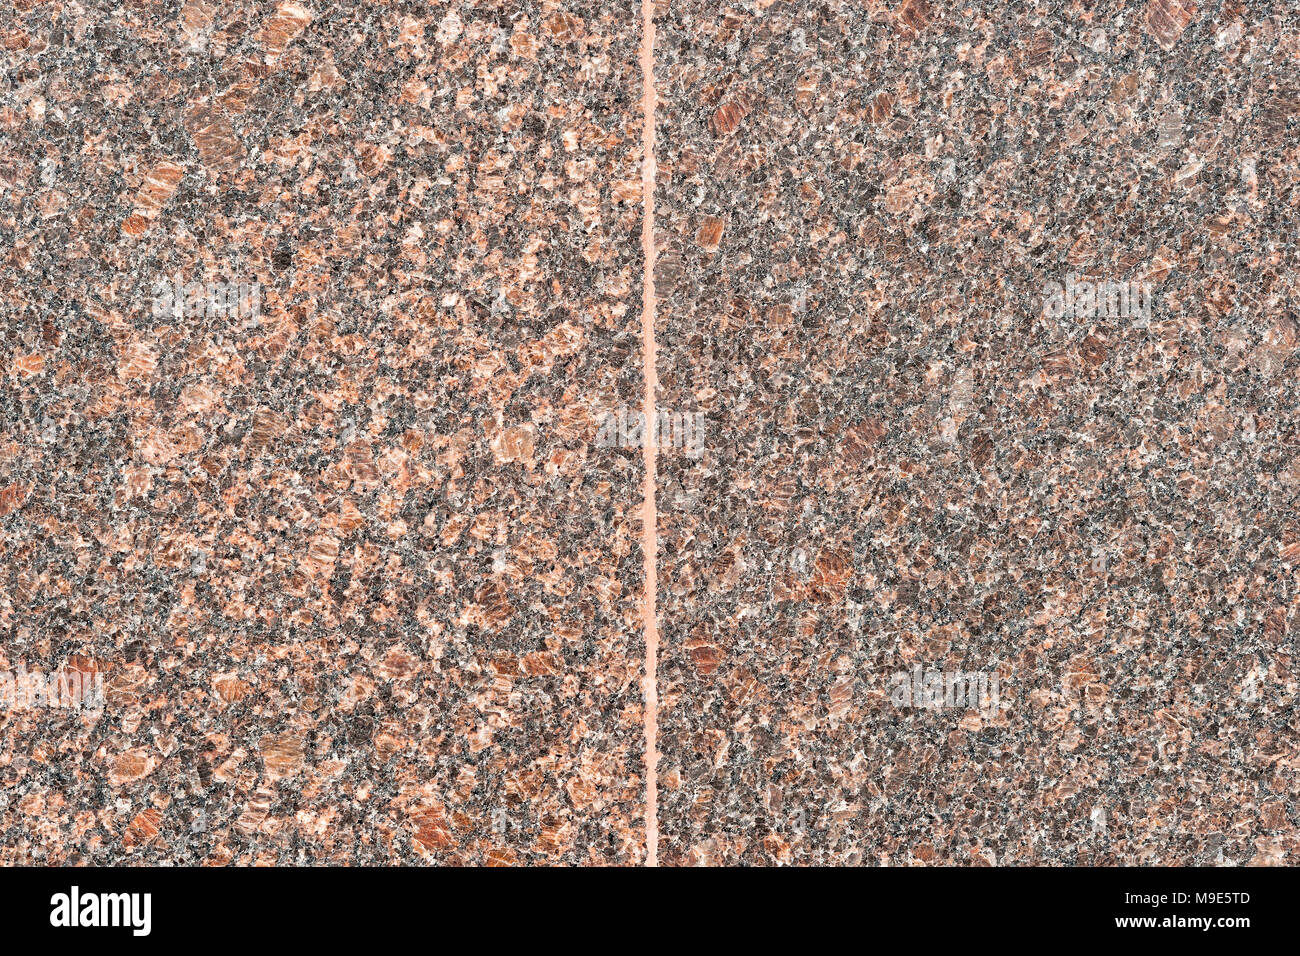 Zwei glatte Granit Platten der braune Farbe durch eine senkrechte Naht geteilt Stockfoto